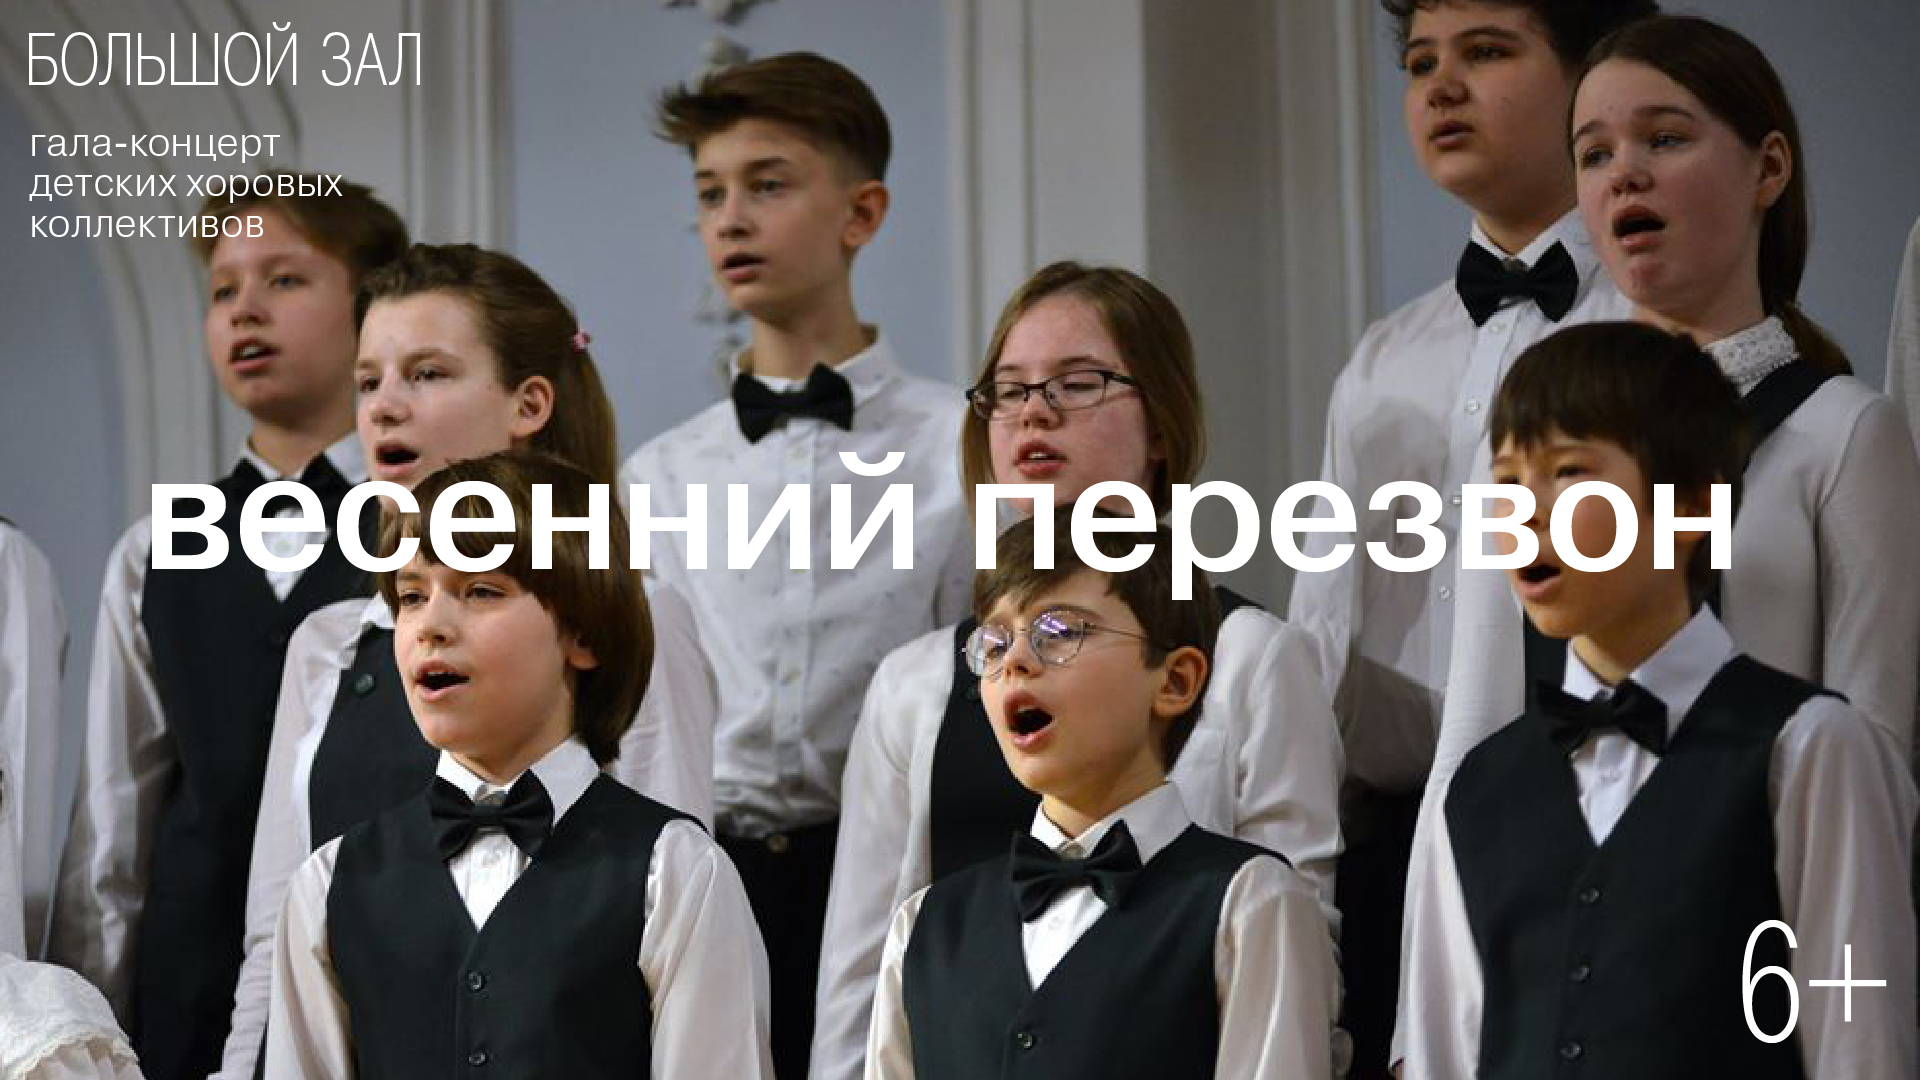 Гала-концерт детских хоровых коллективов<br>«Весенний перезвон»